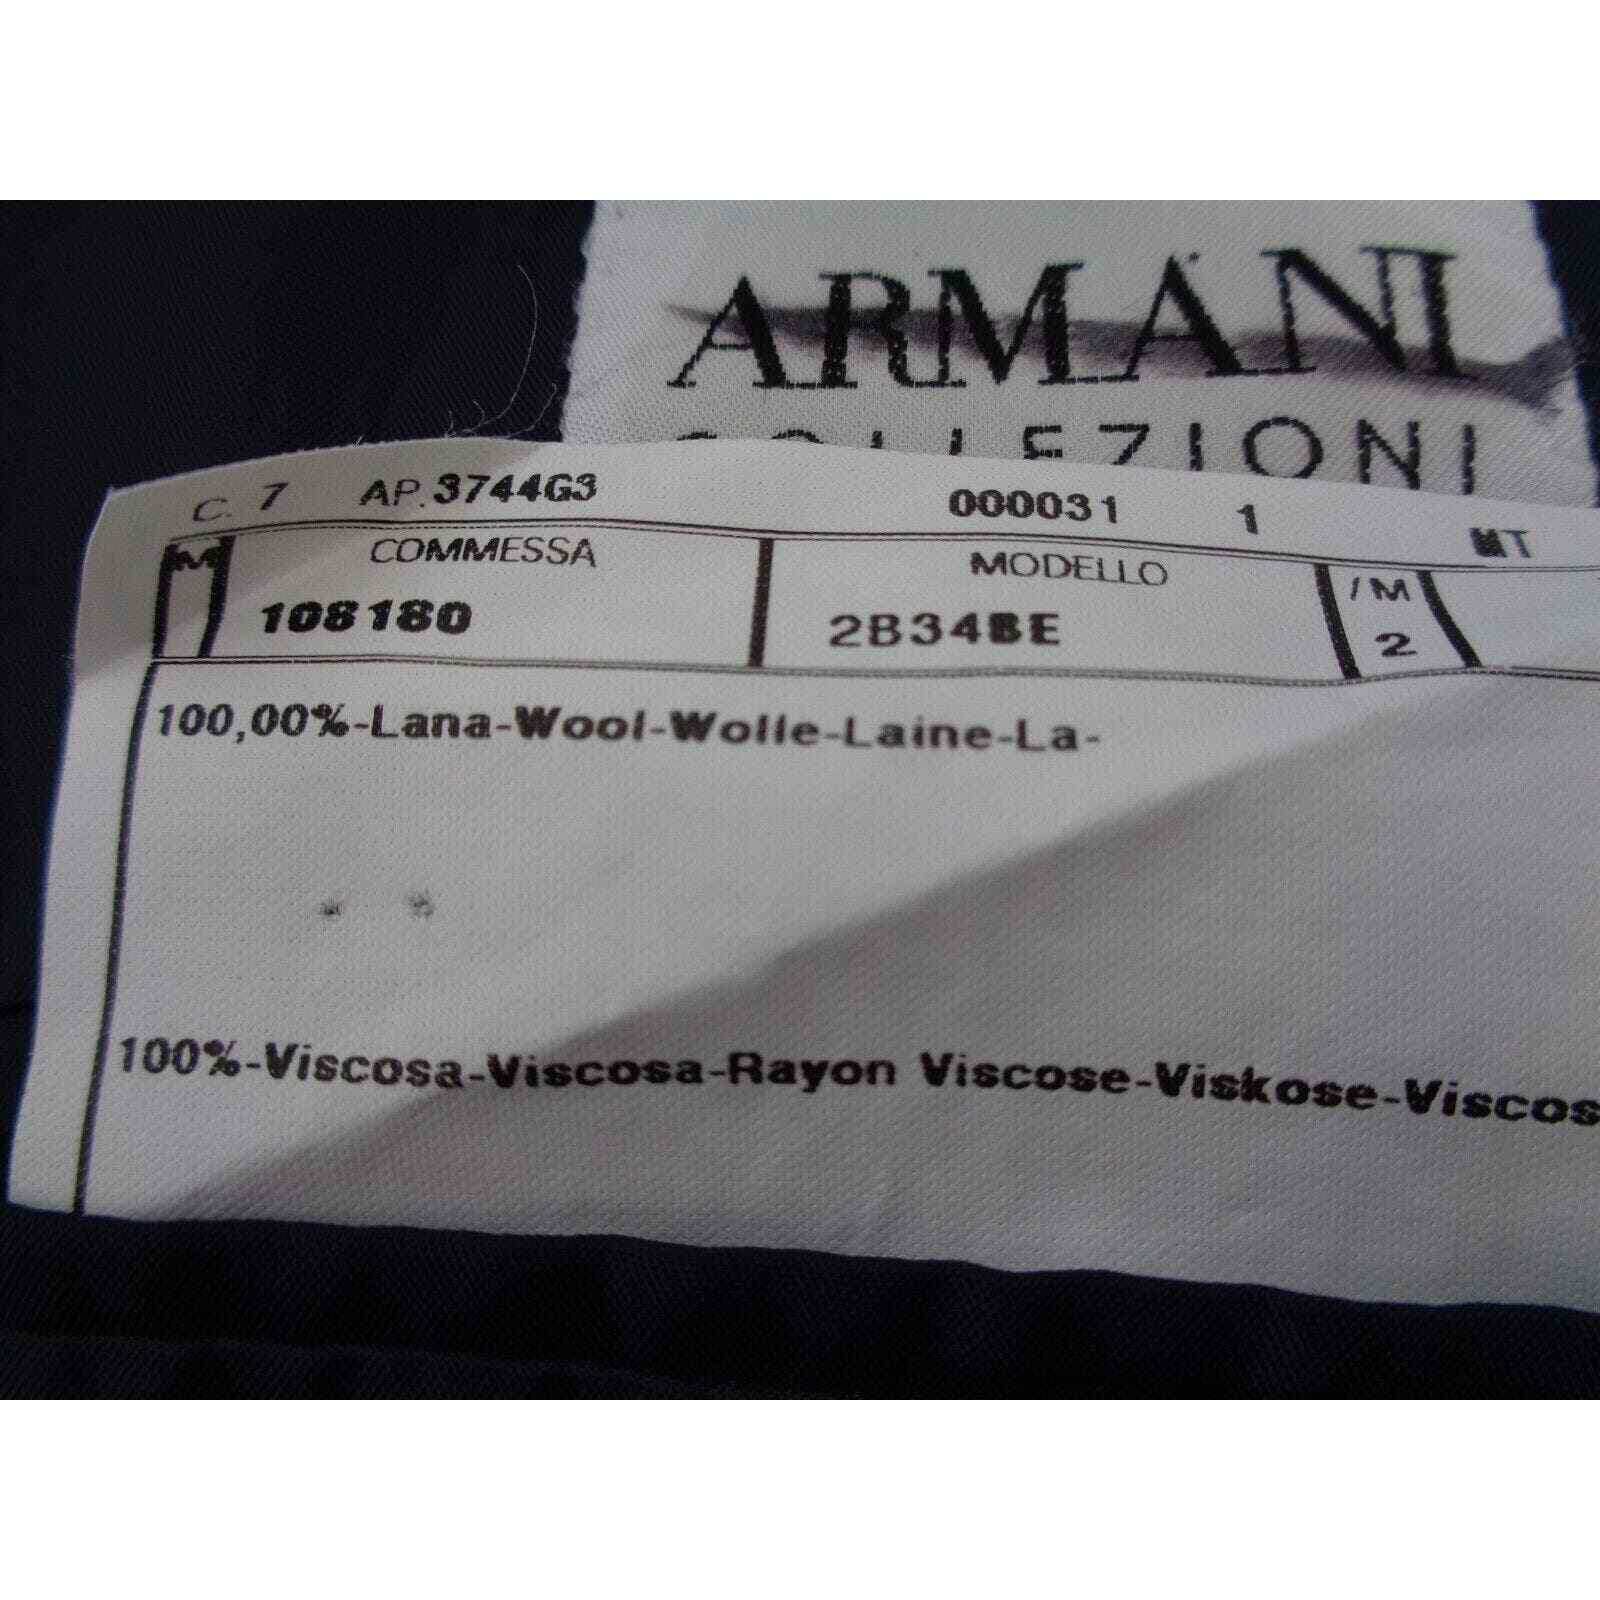 Armani Collezioni Men's 42R Navy Suit jacket Blaz… - image 8